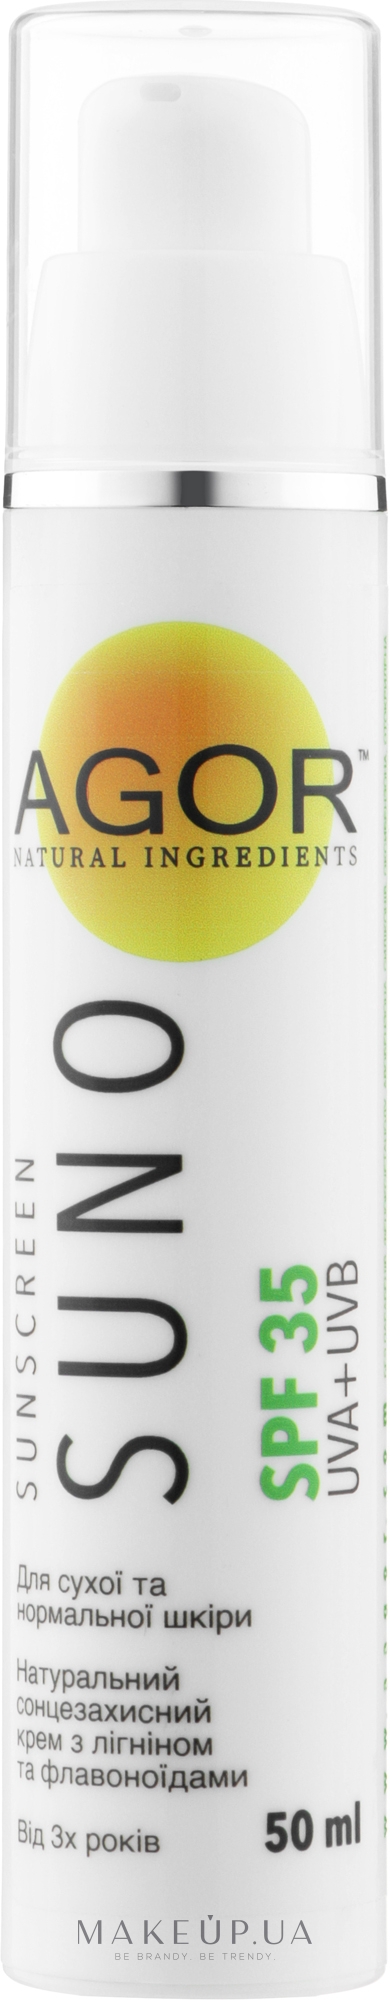 Сонцезахисний крем для сухої й нормальної шкіри з SPF 35 - Agor Natural Ingredients Suno — фото 50ml